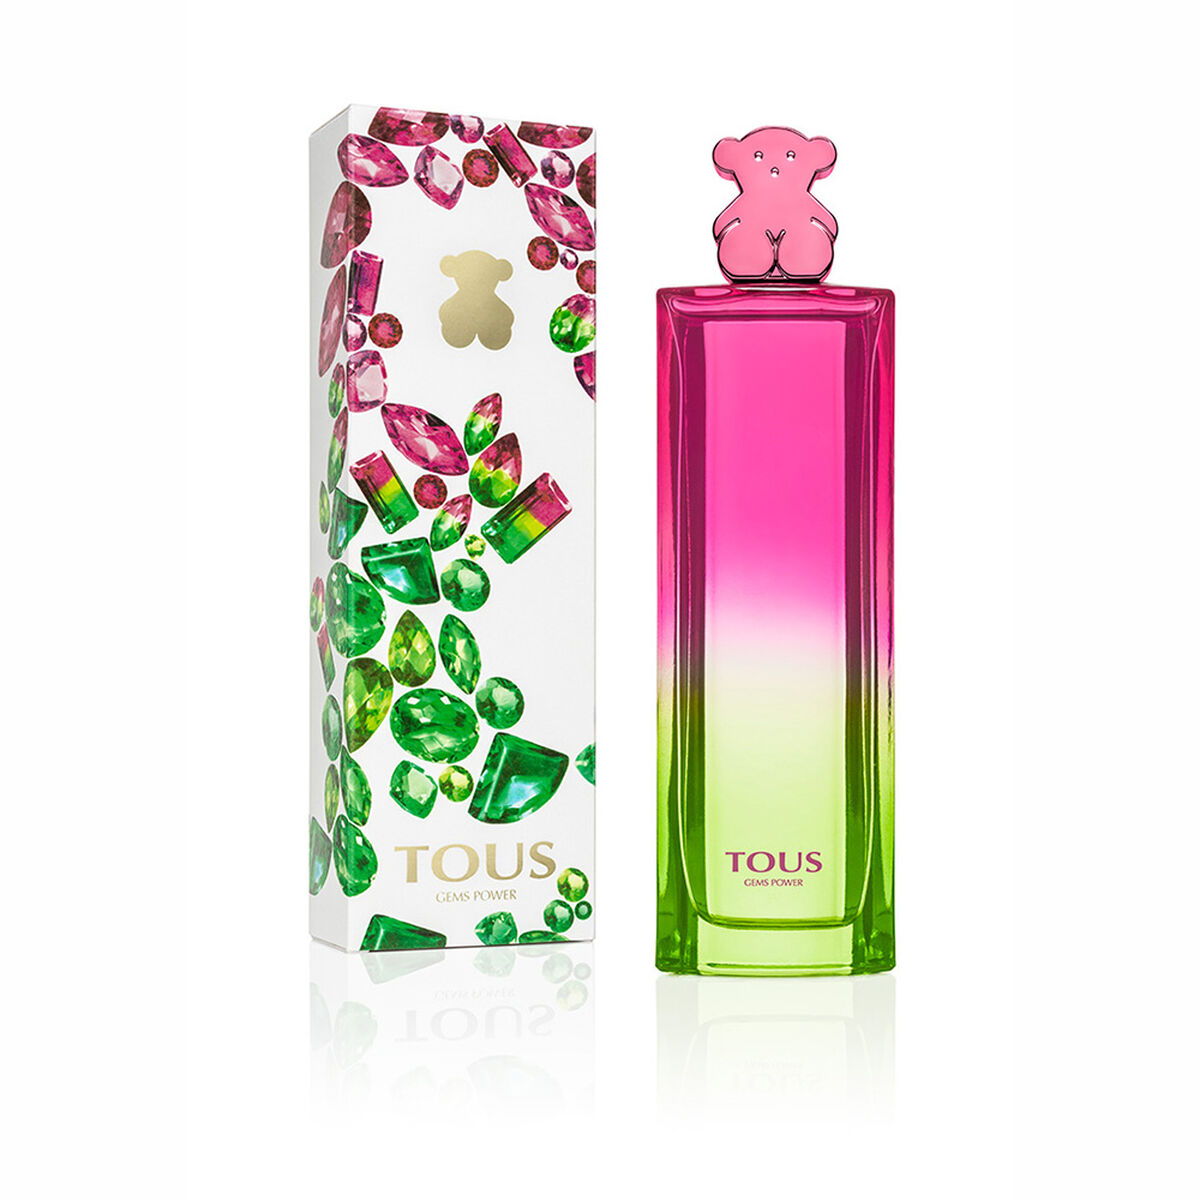 Perfume Tous Gems Power EDT 90 ml